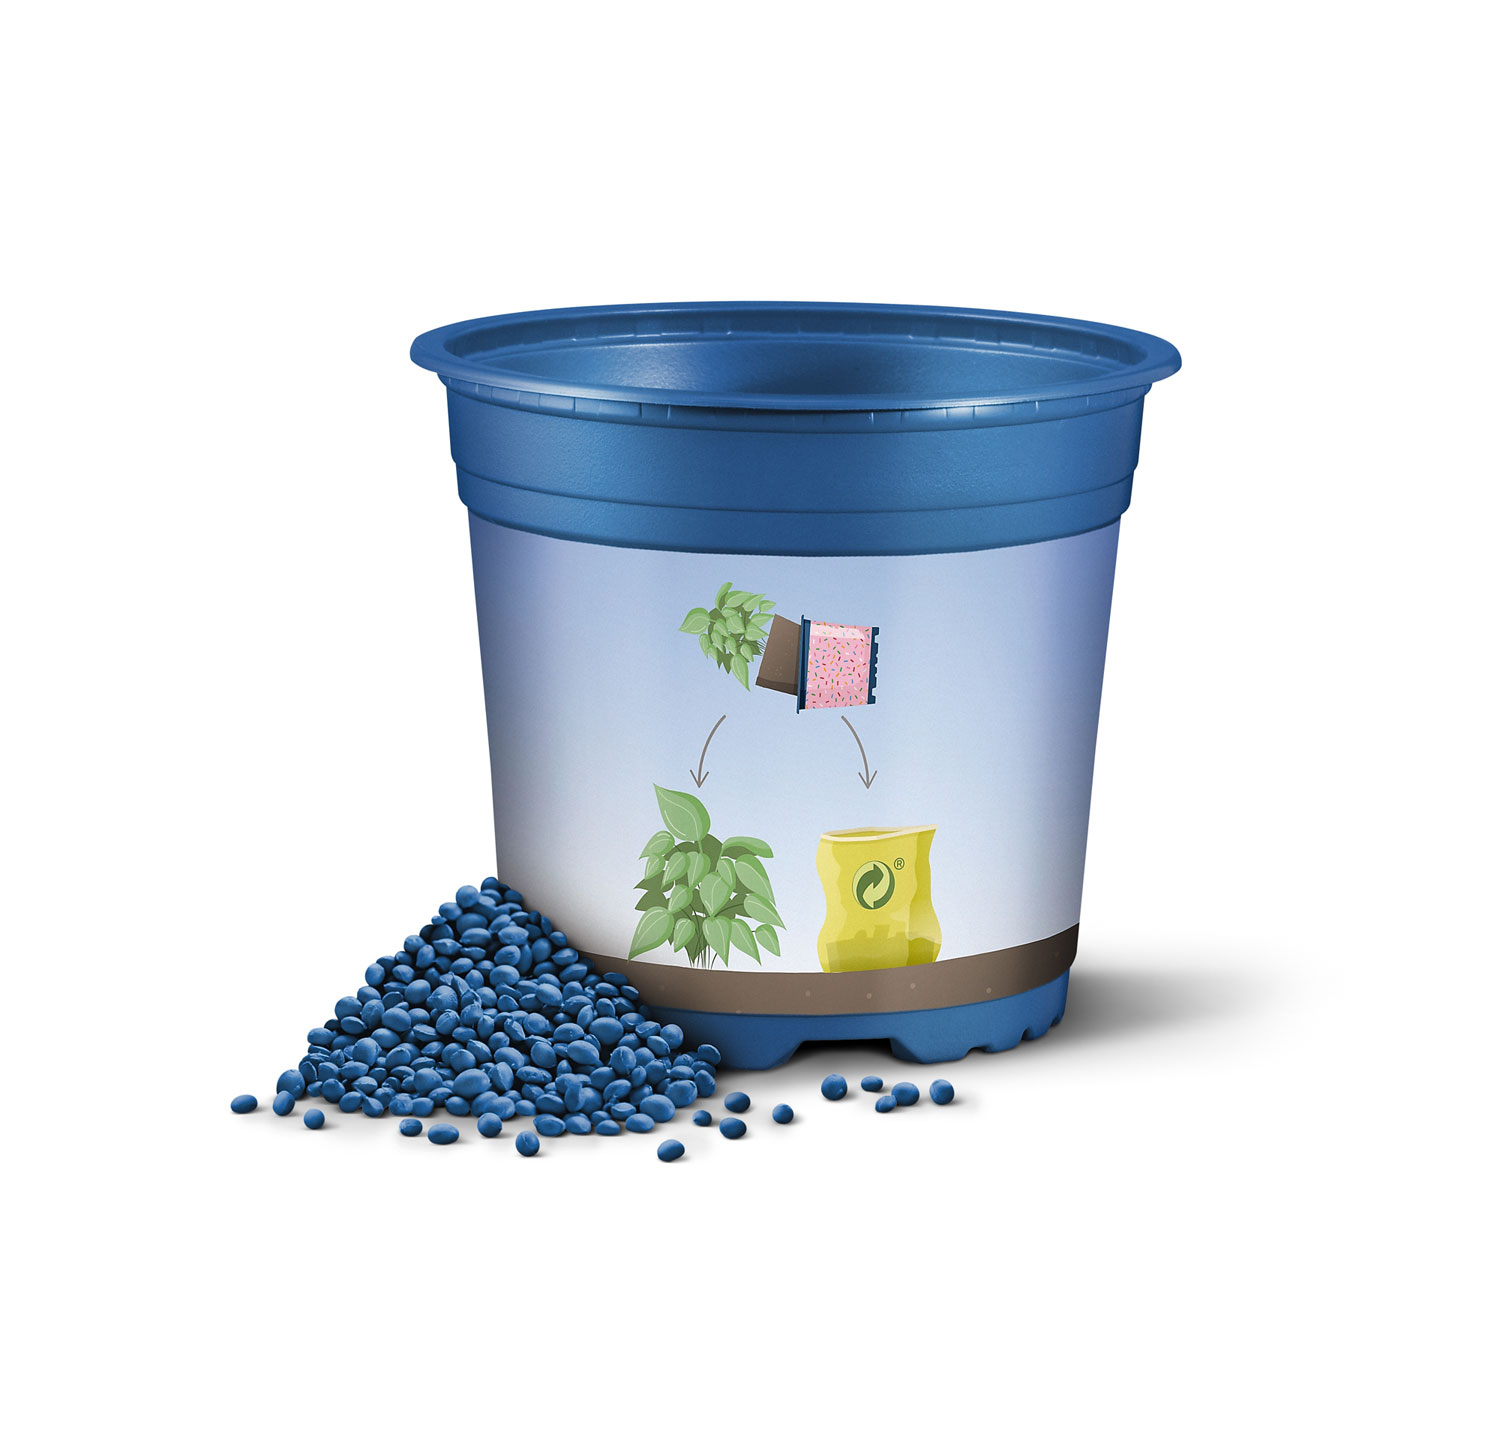 Pppelmann blue: Se ampla la gama de macetas totalmente reciclables con nuevas y conocidas series